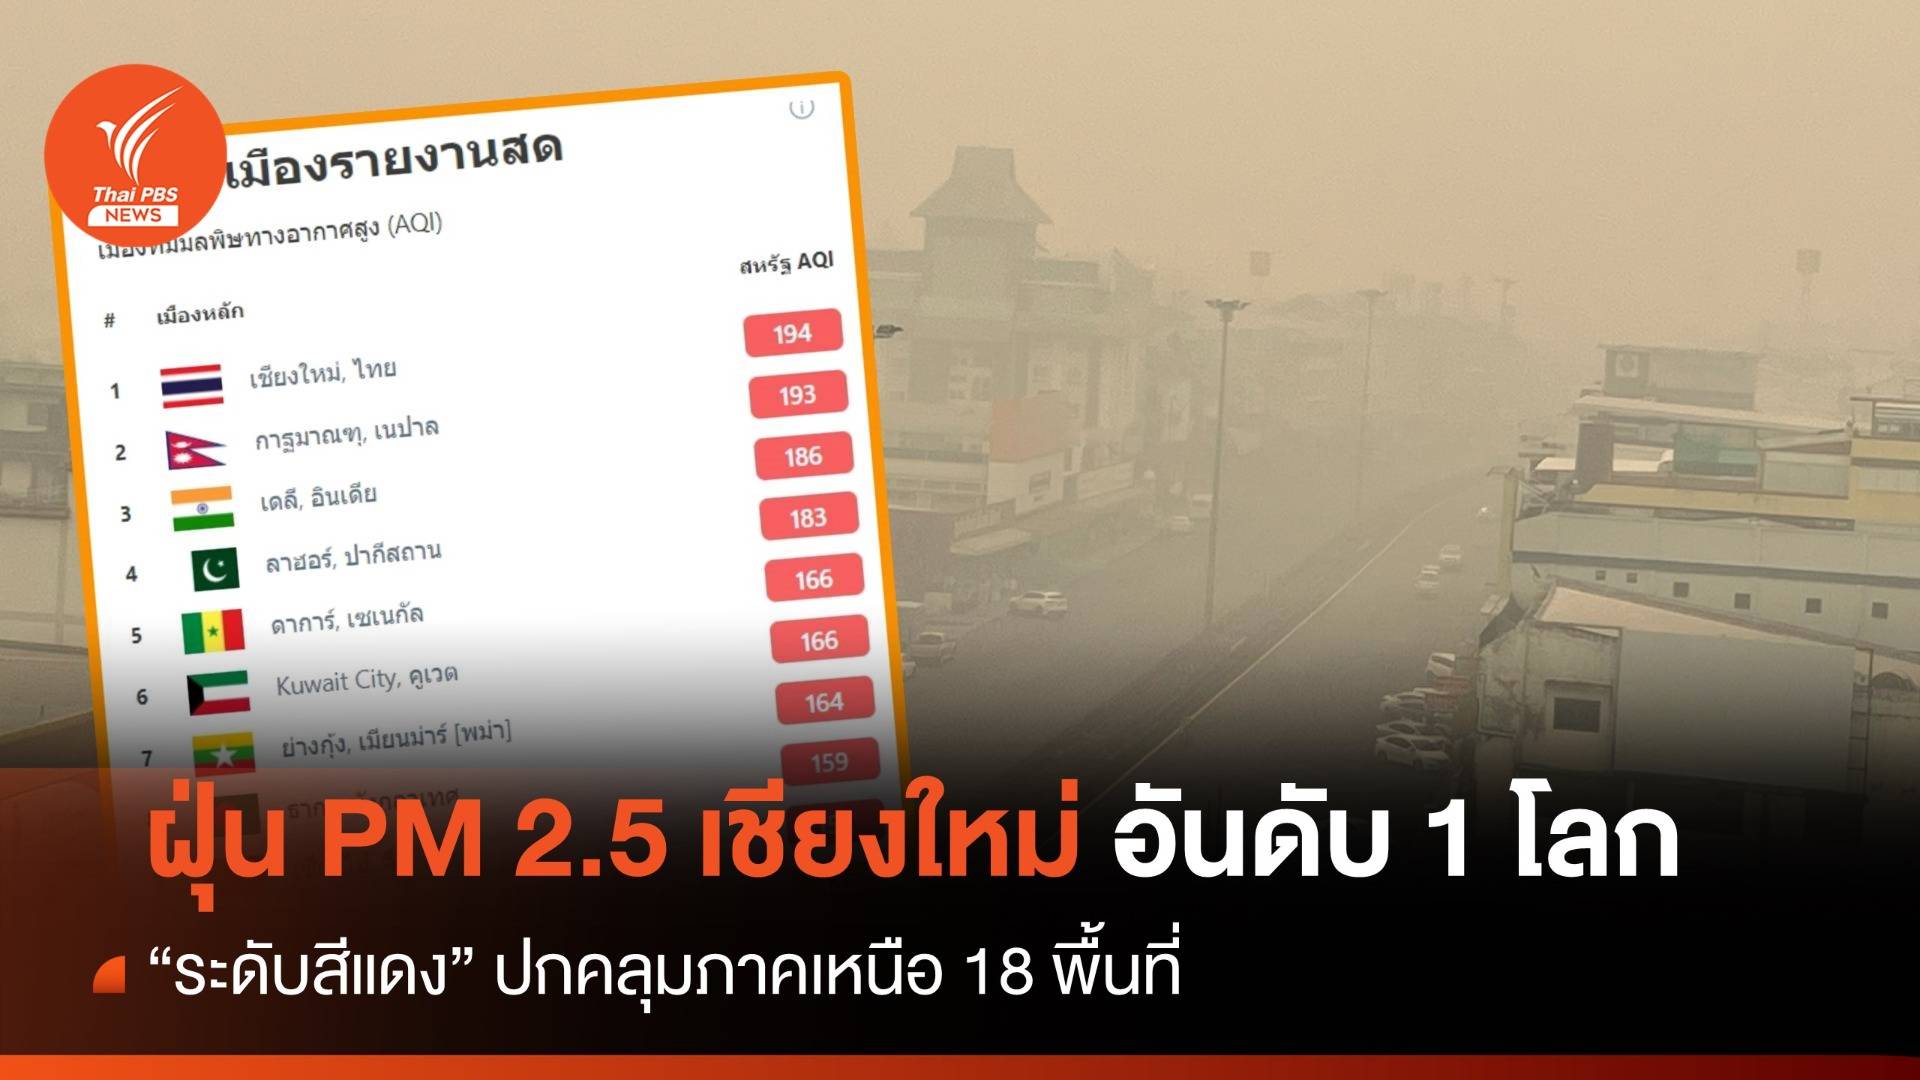 เชียงใหม่ ฝุ่น PM2.5 พุ่งอันดับ 1 โลก ภาคเหนือระดับสีแดง 18 พื้นที่ 